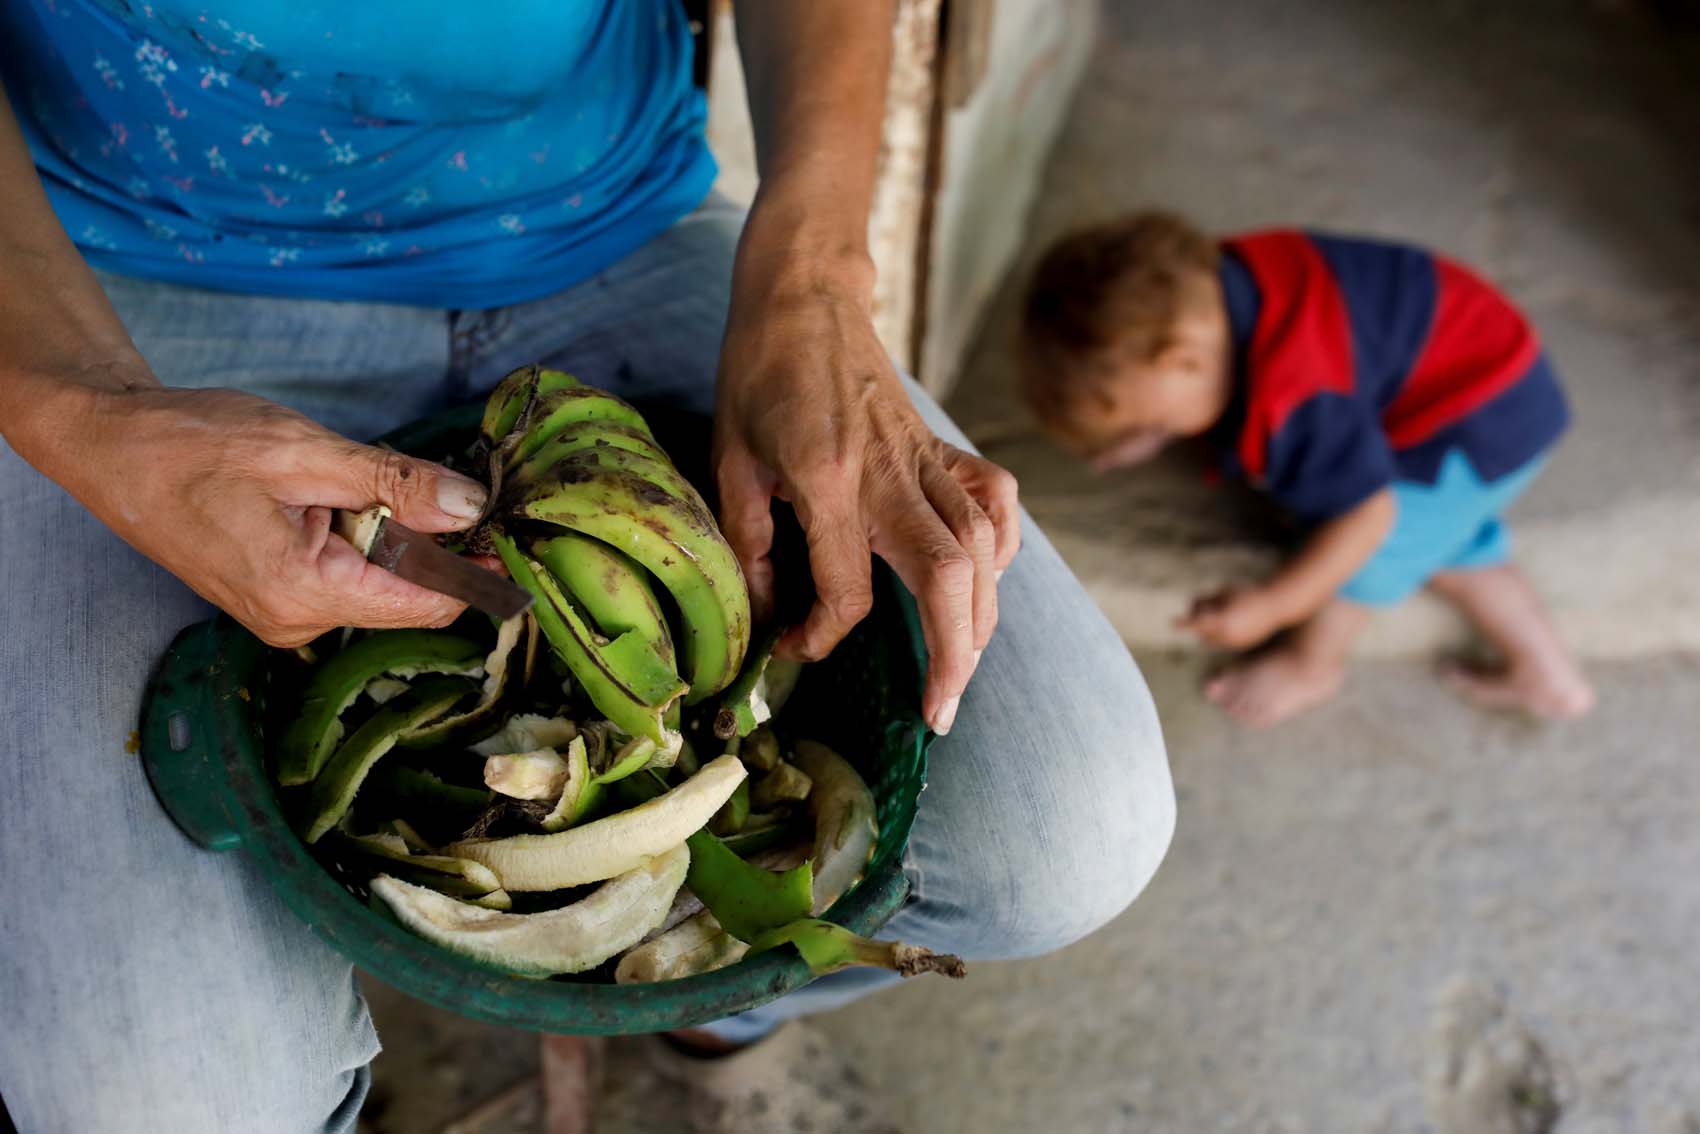 “Me acostaba con un vaso de agua, porque no tenía qué comer”: Desnutrición golpea hogares pobres en Venezuela (Video)